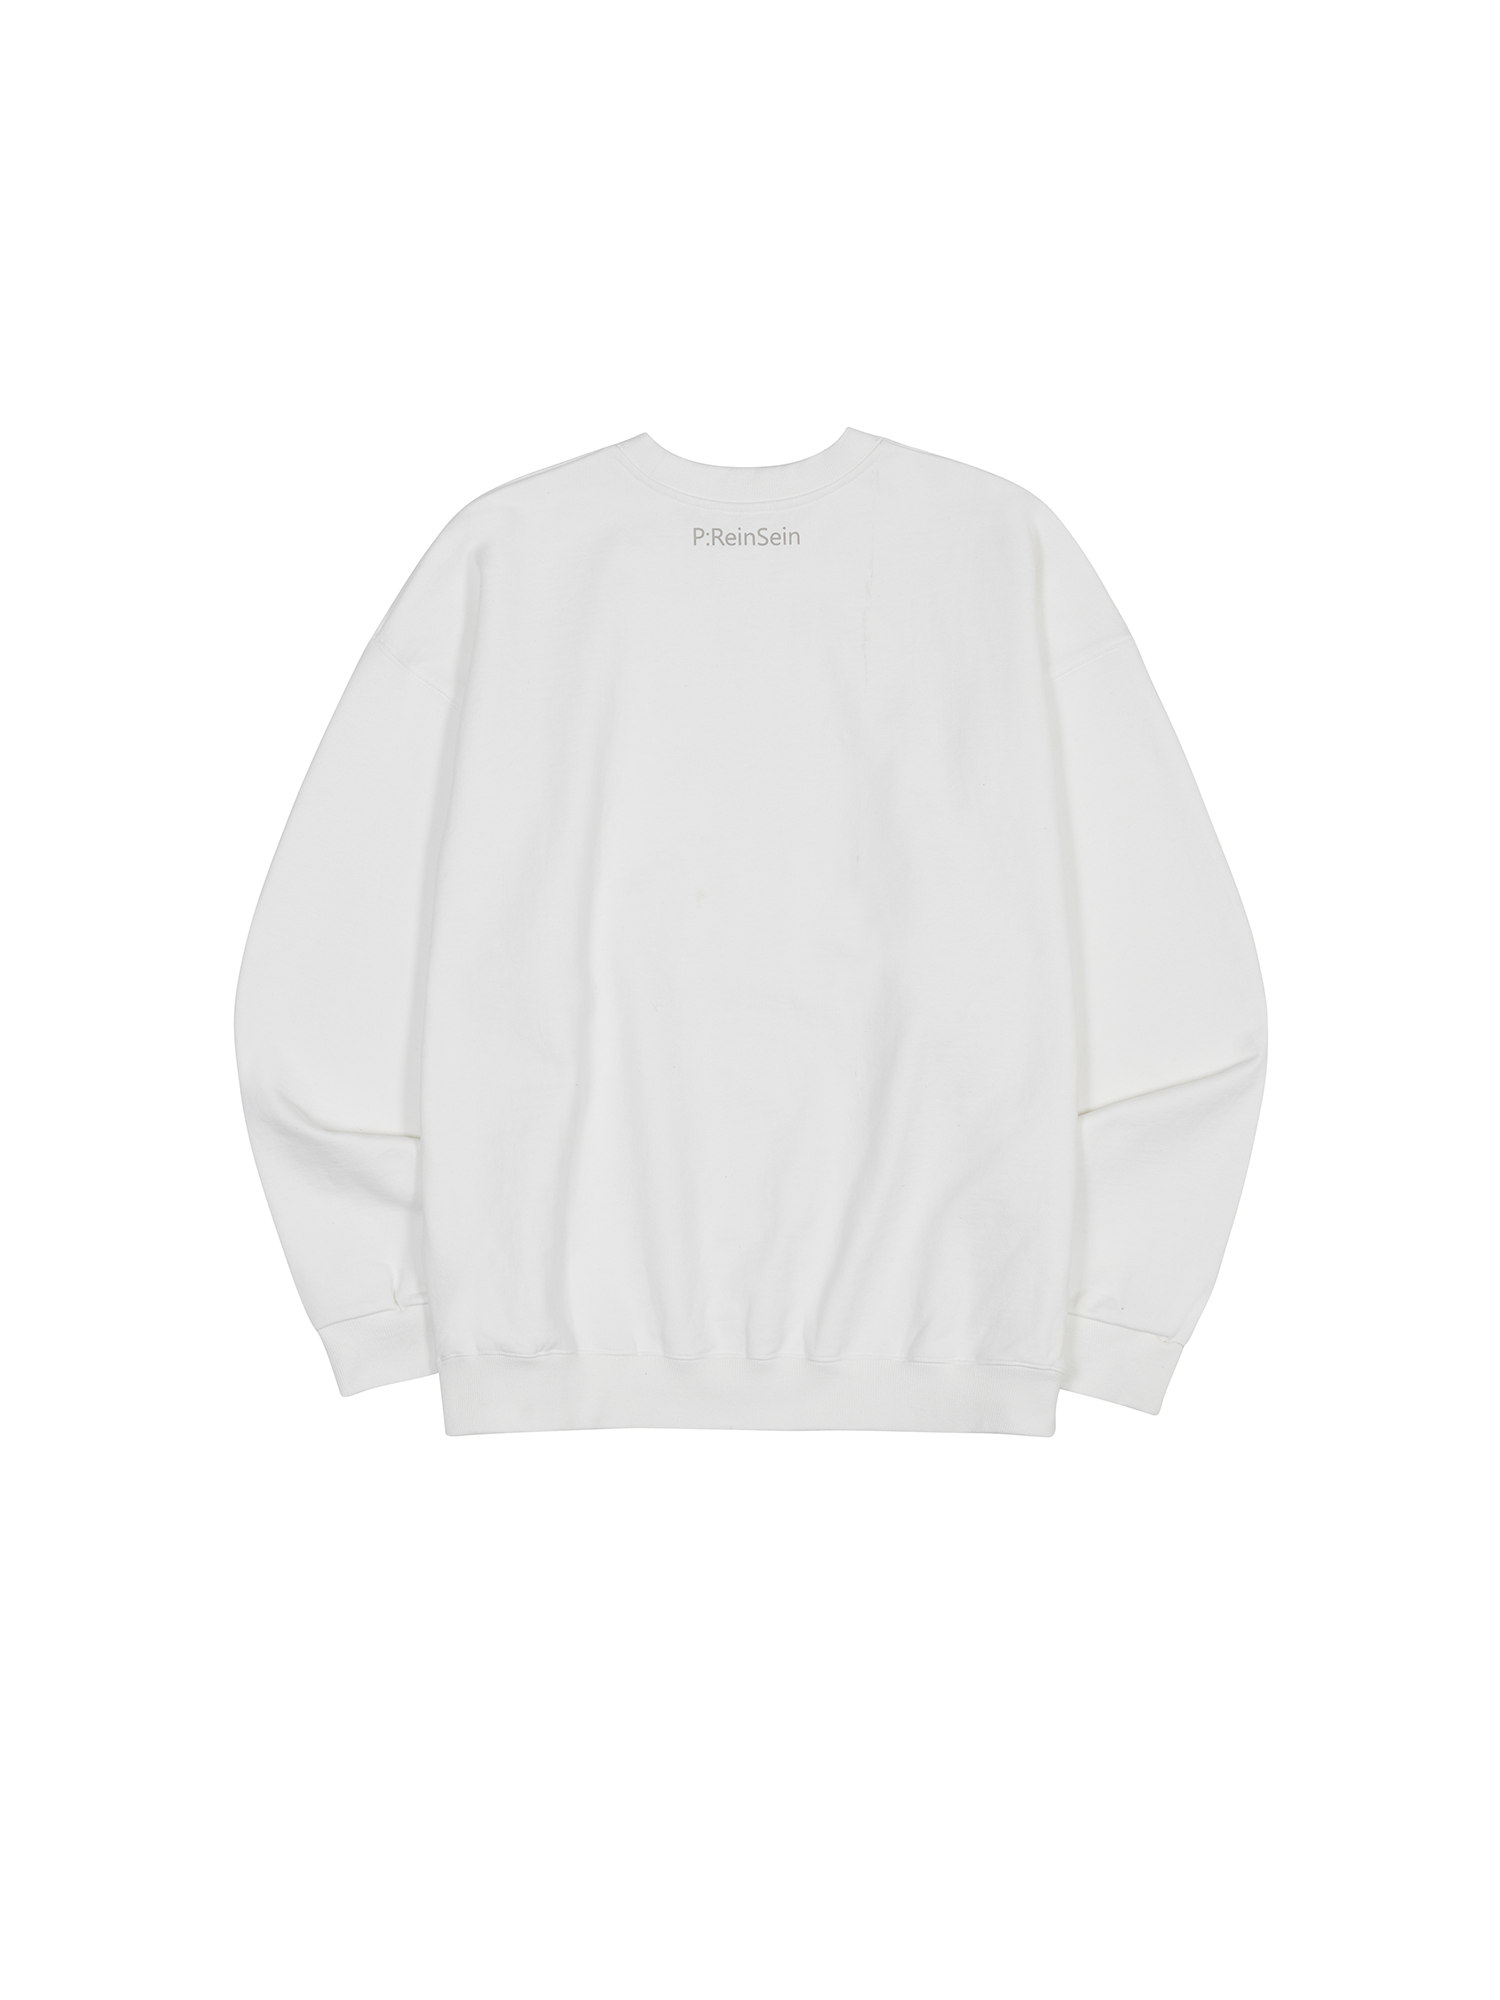 ReinSein Ivory sweatshirt